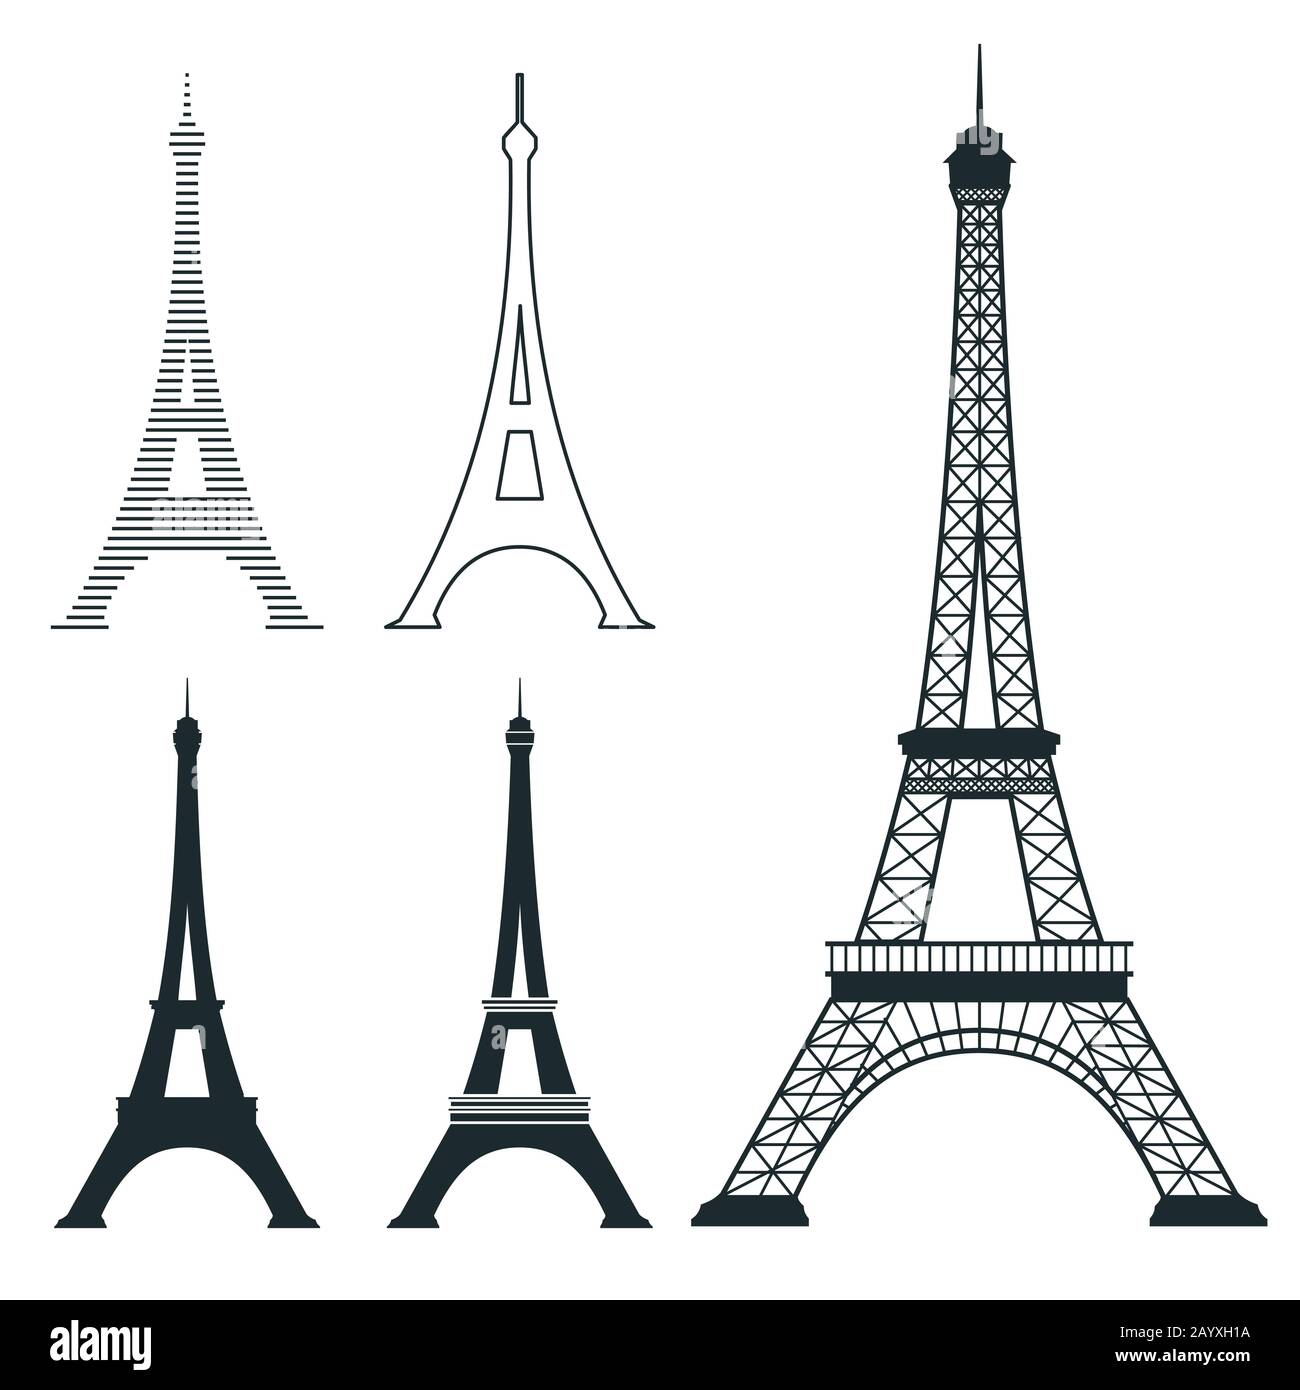 Verschiedene eiffelturm-vektor-Orientierungspunkte gesetzt. Französisches Architekturdenkmal, berühmte romantische Platzillustration Stock Vektor